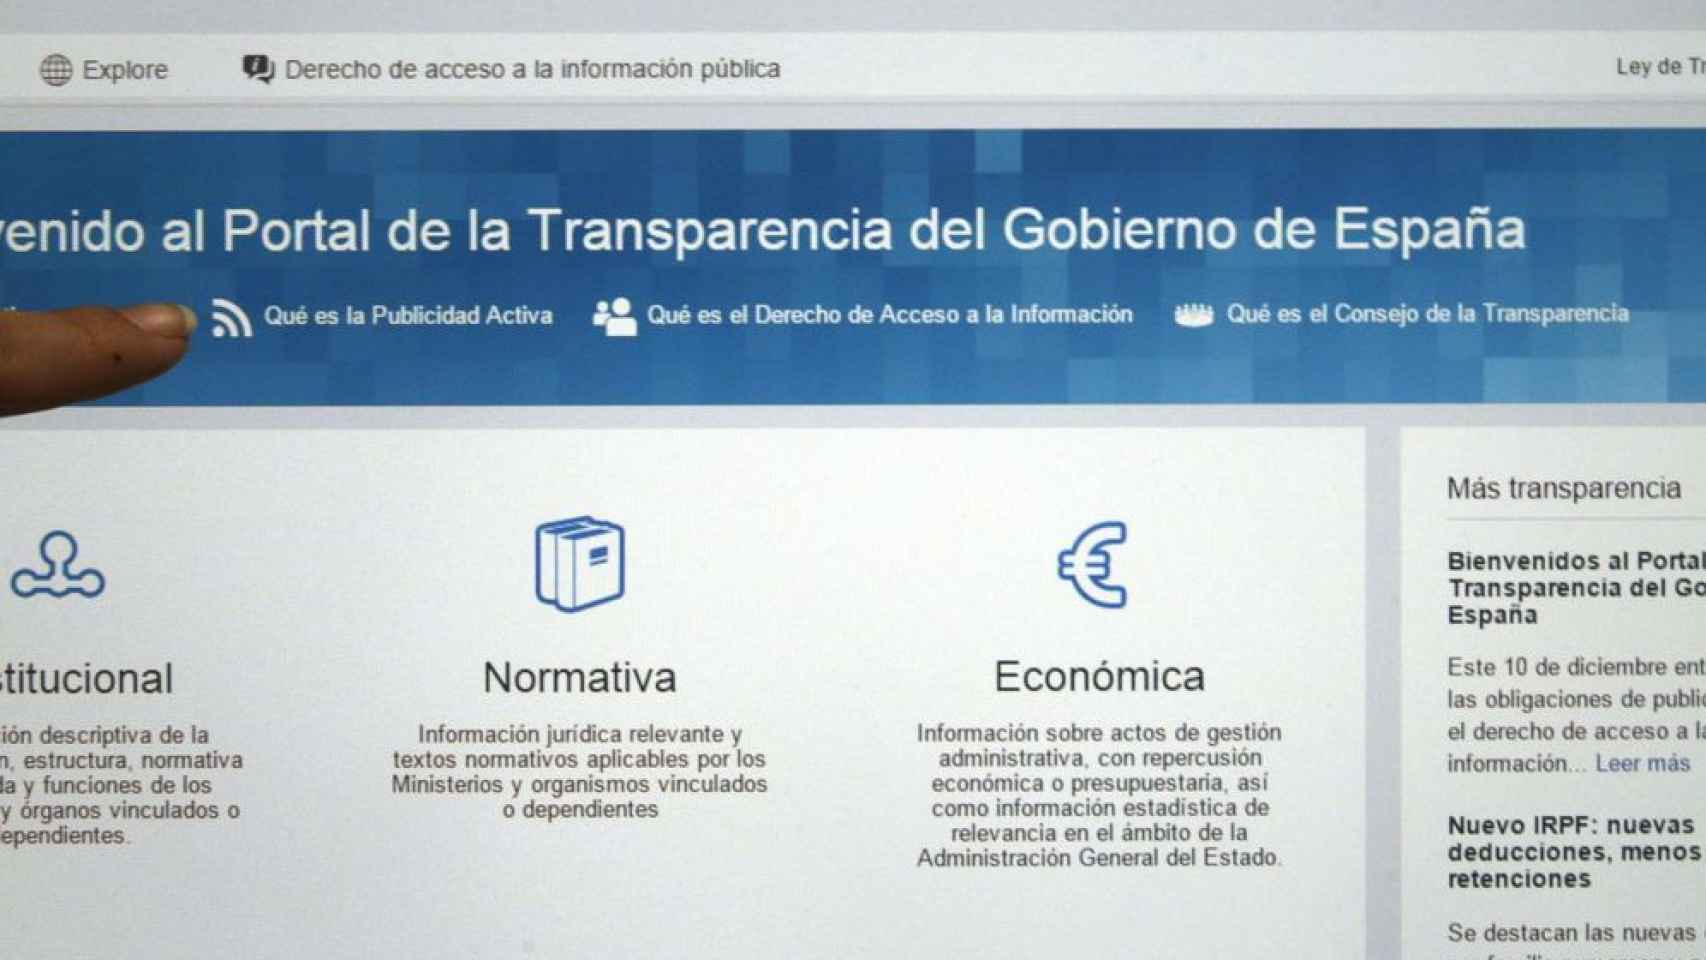 Imagen de la presentación web del Portal de la Transparencia.